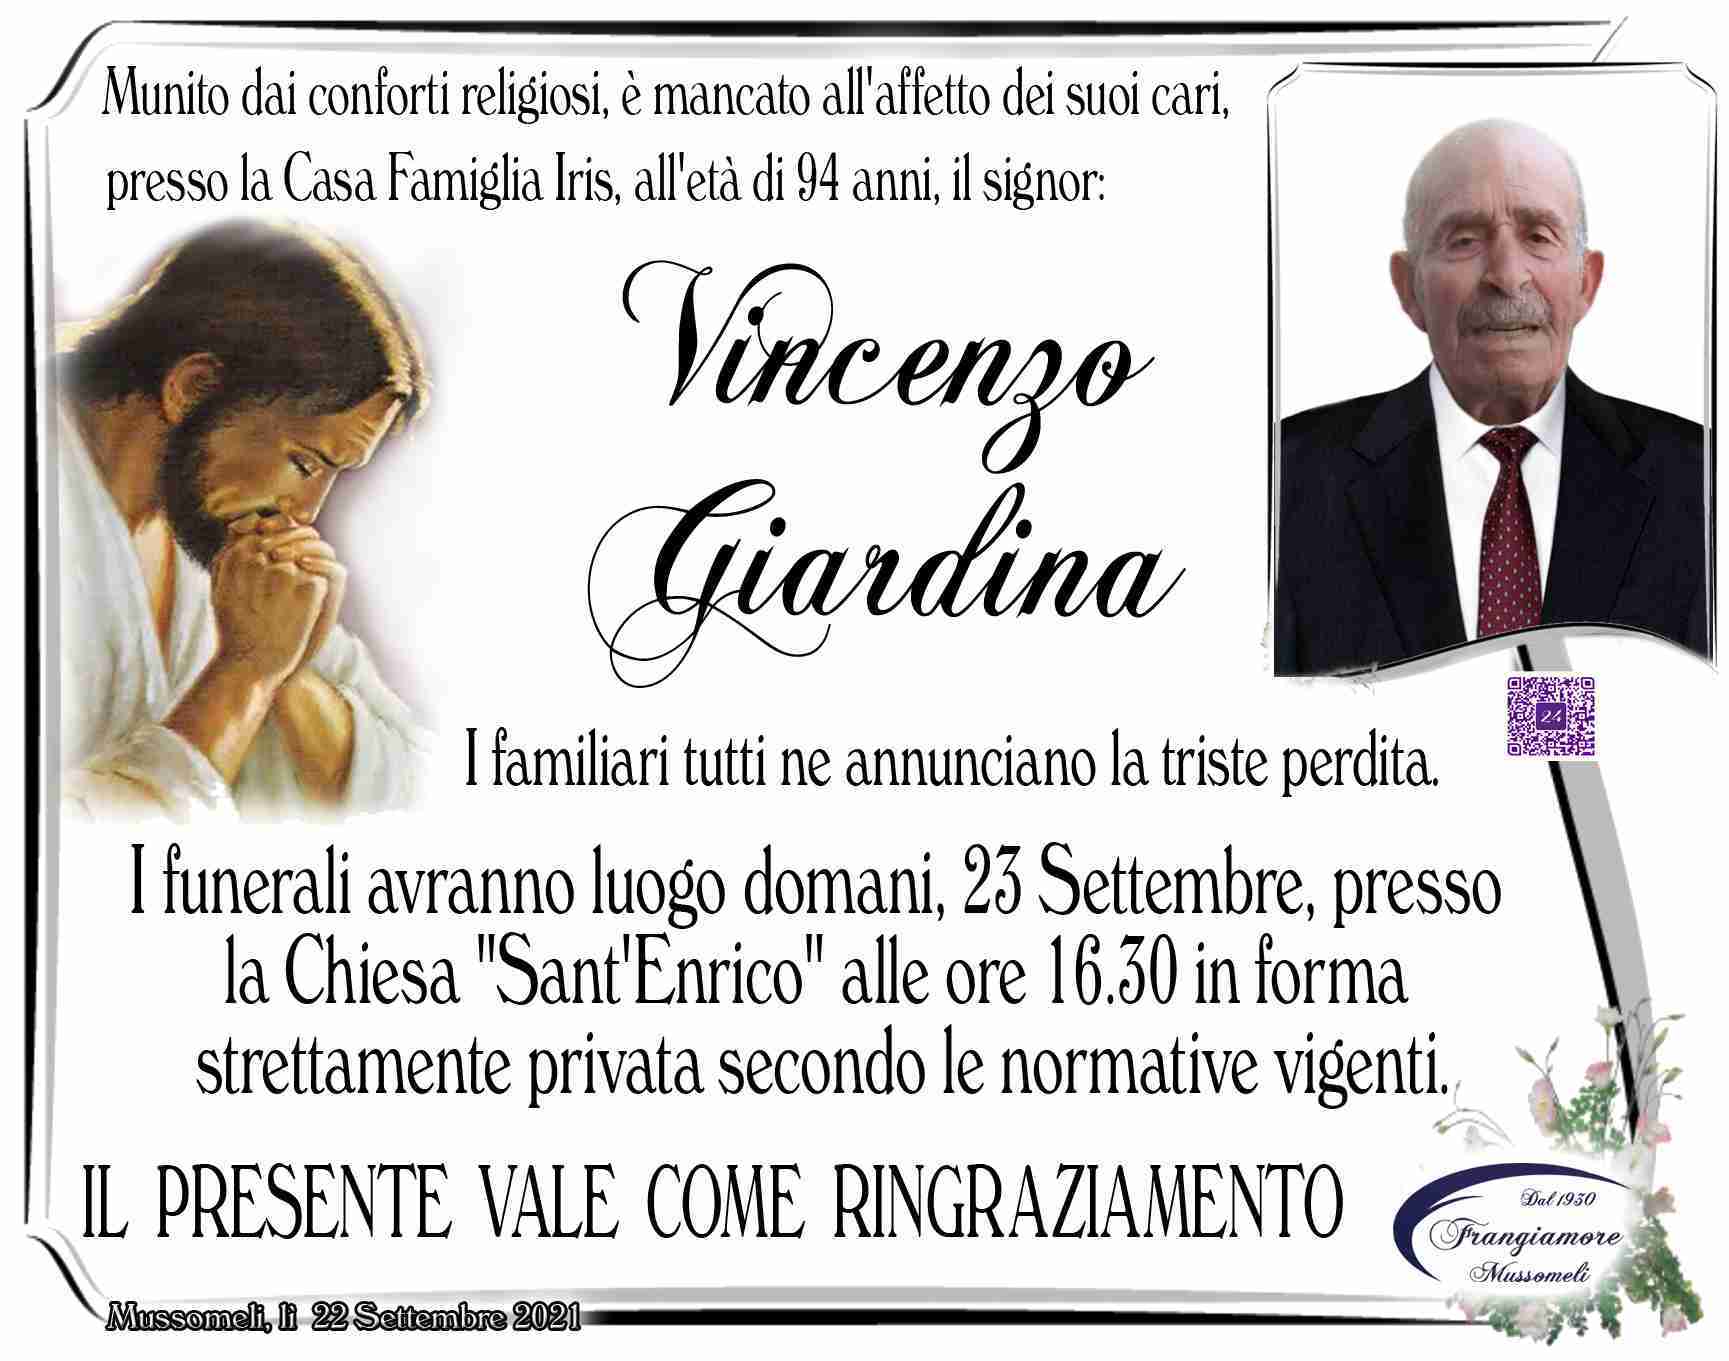 Vincenzo Giardina